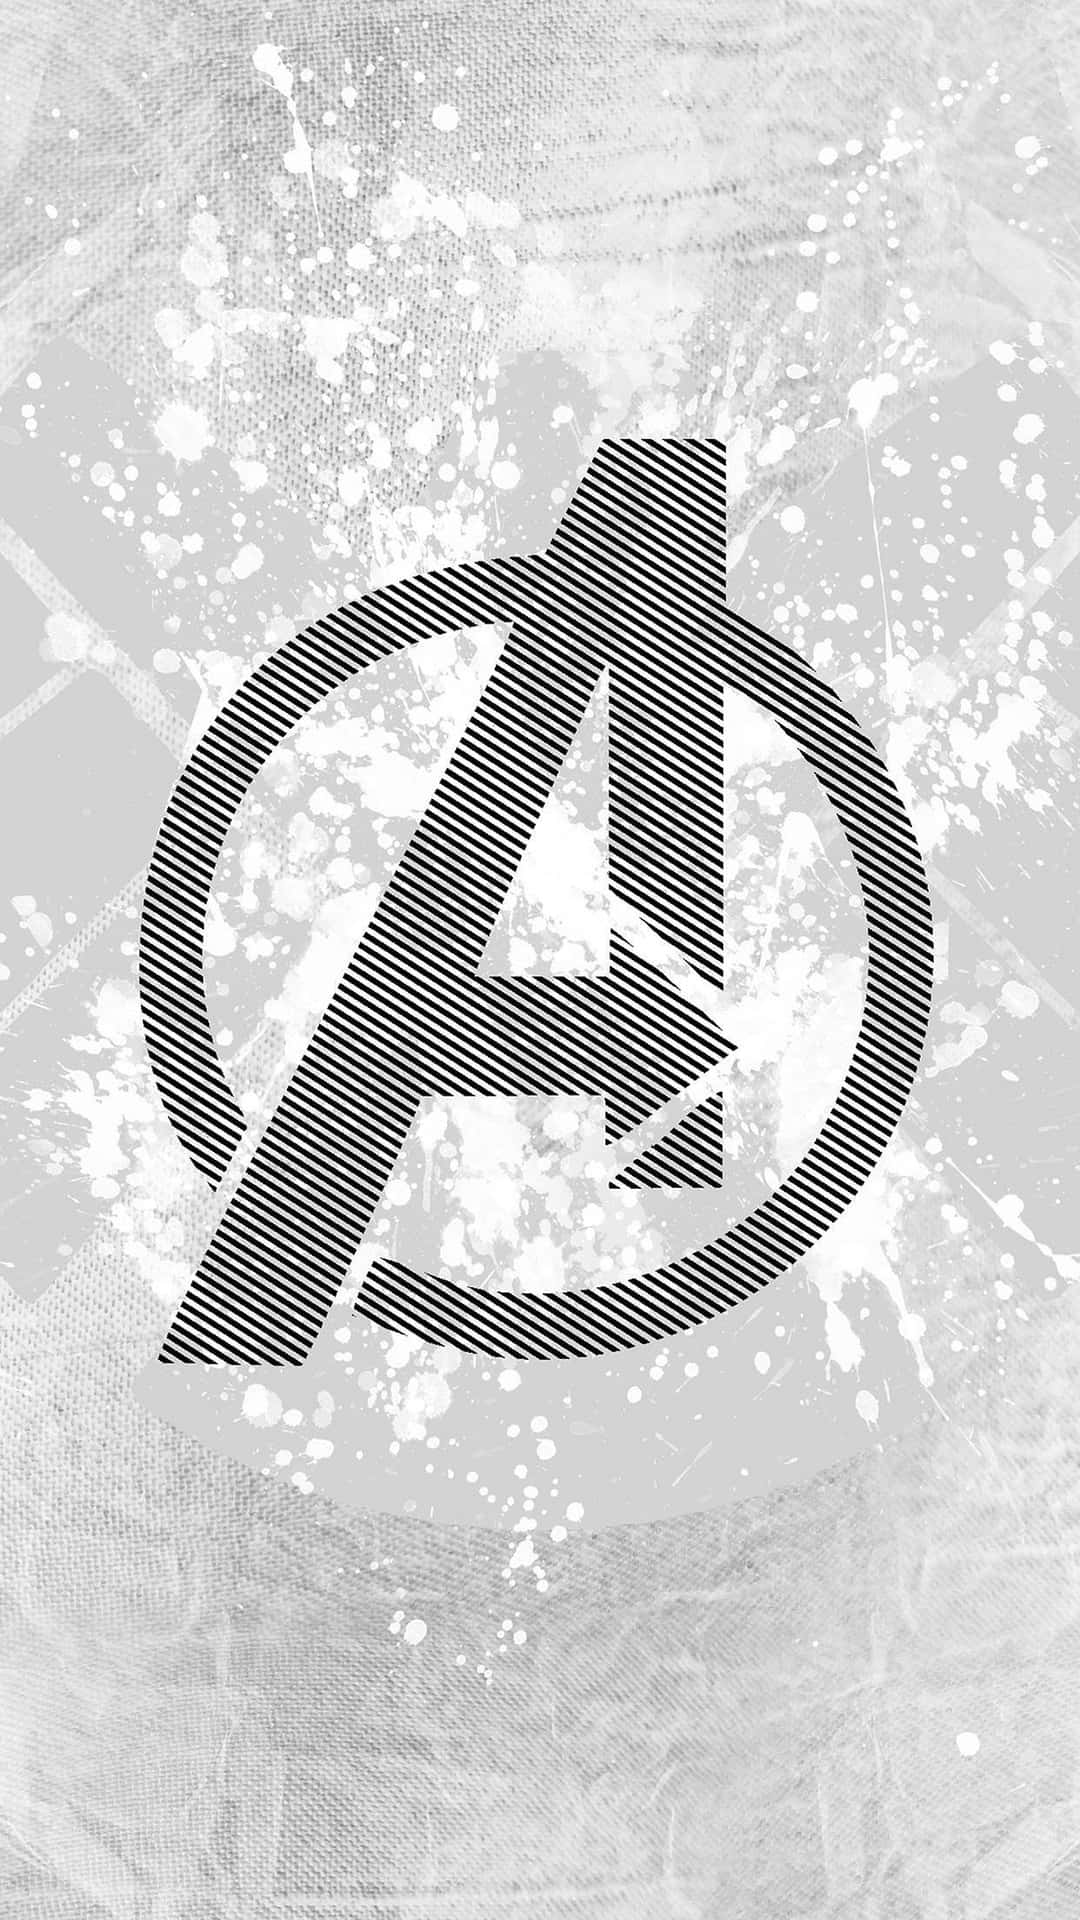 Logotipode Los Vengadores De Marvel En Blanco Y Negro. Fondo de pantalla